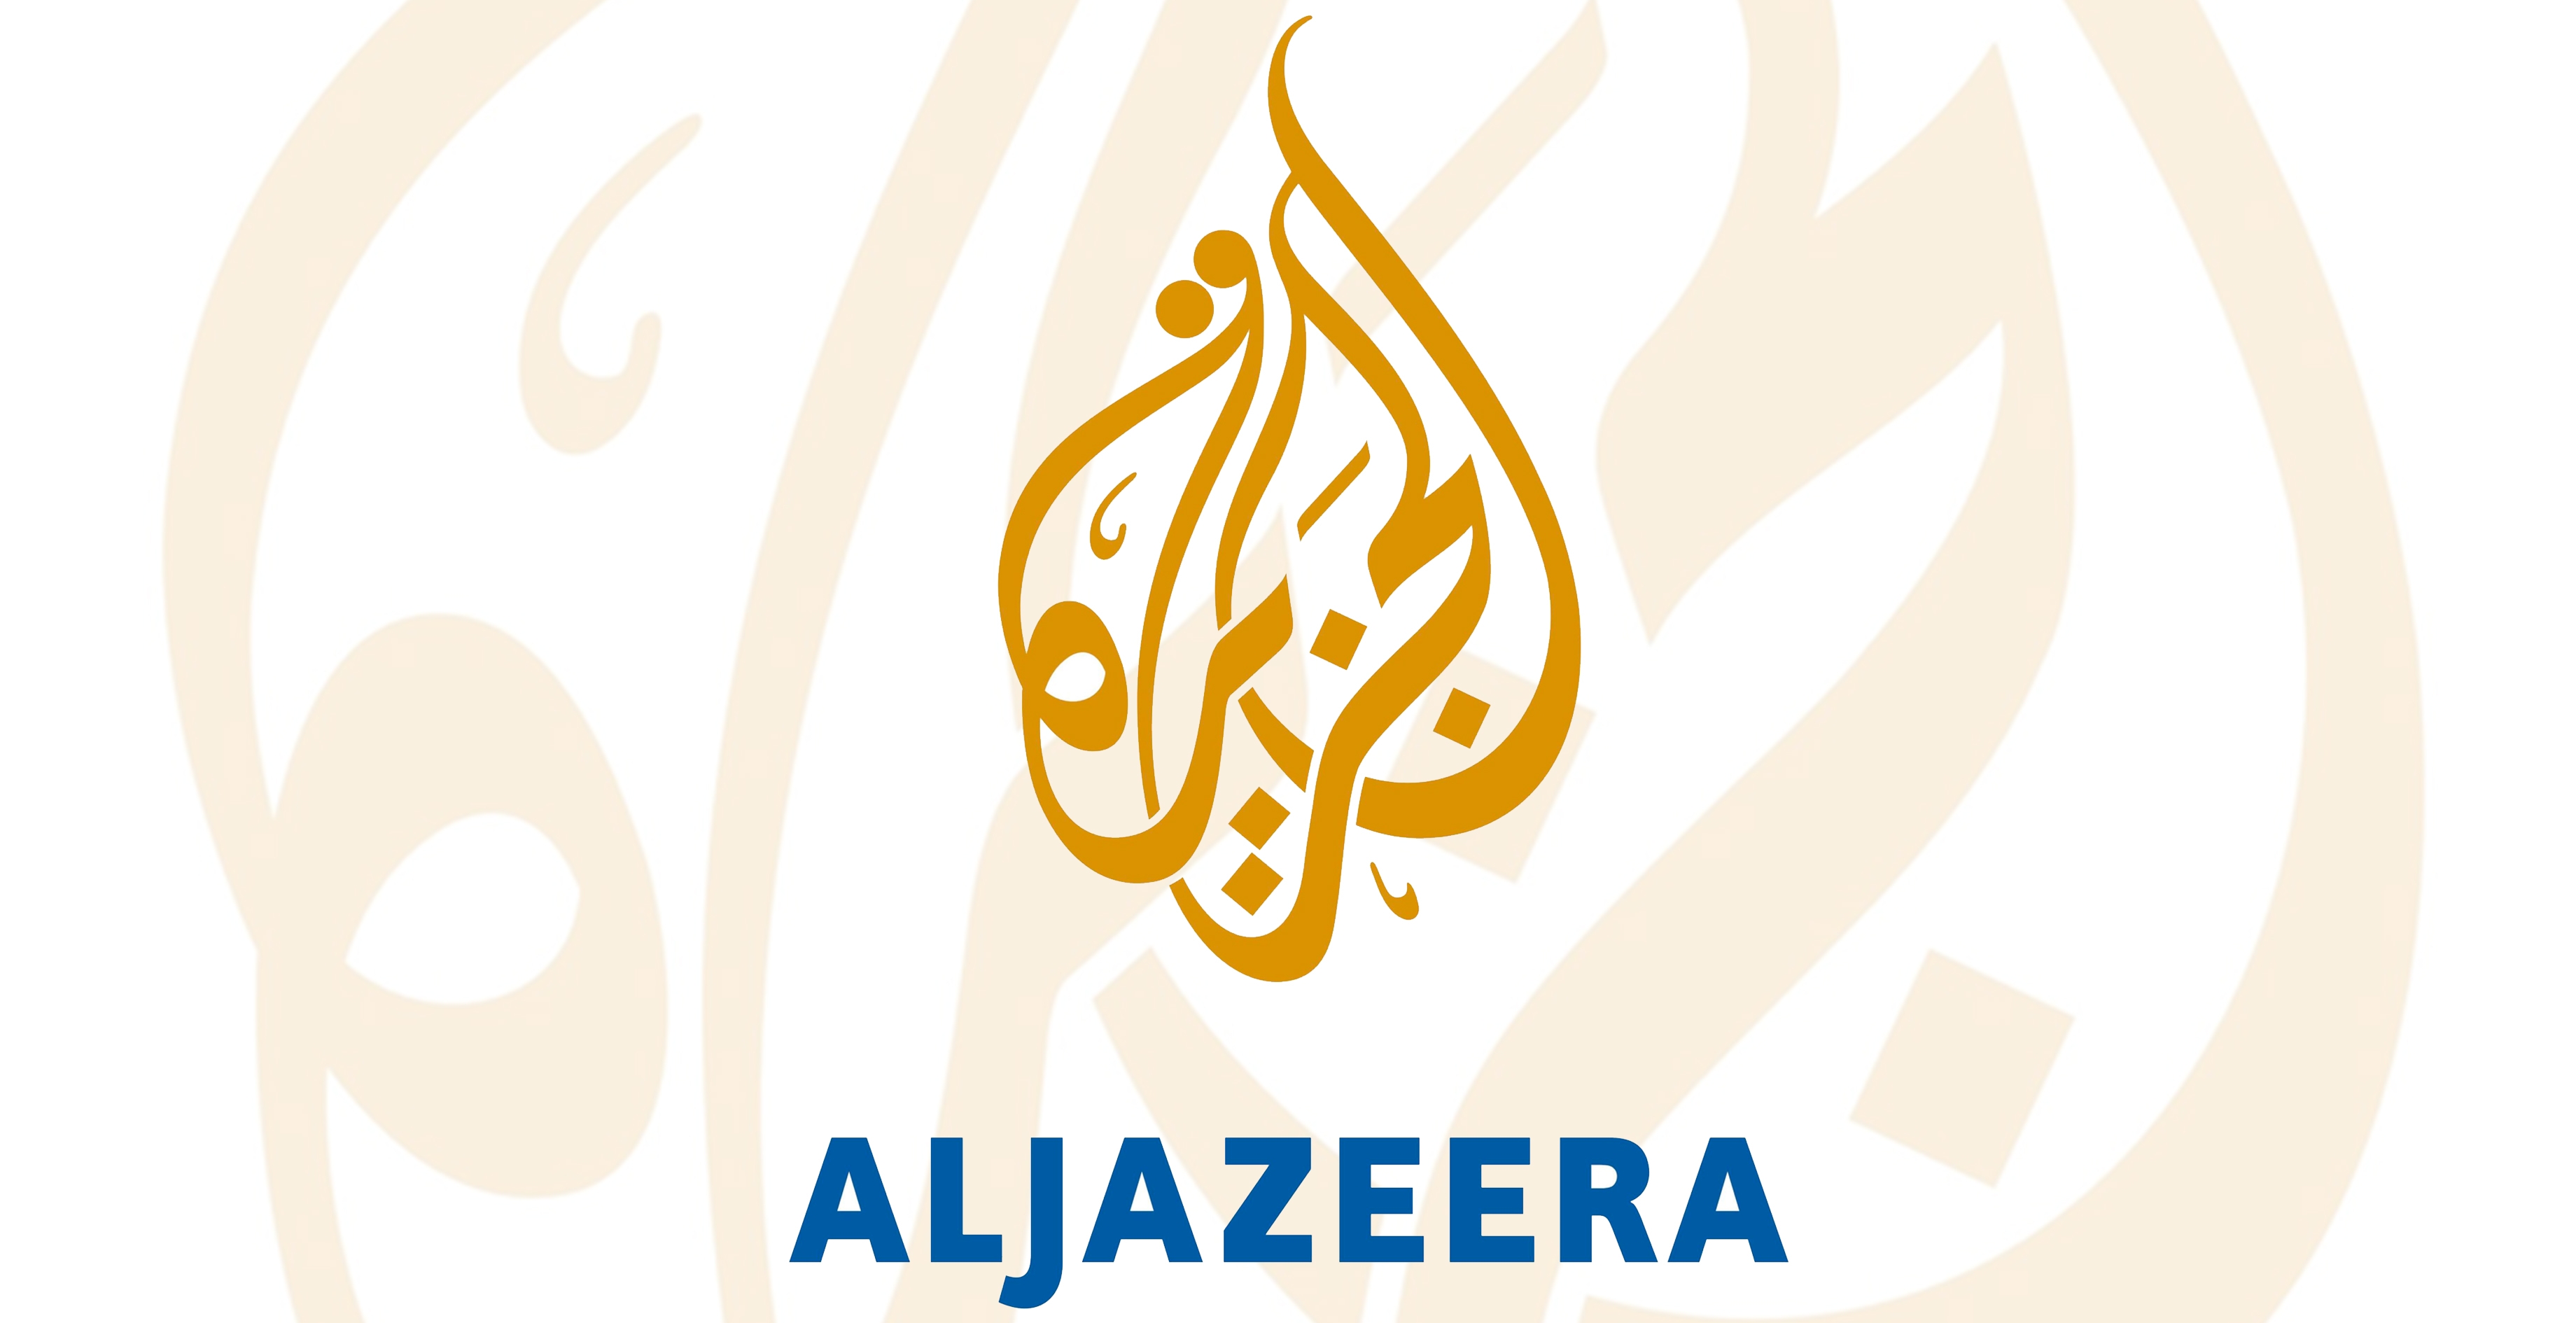 Regarder Aljazeera en direct sur ordinateur et sur smartphone depuis internet: c'est gratuit et illimité